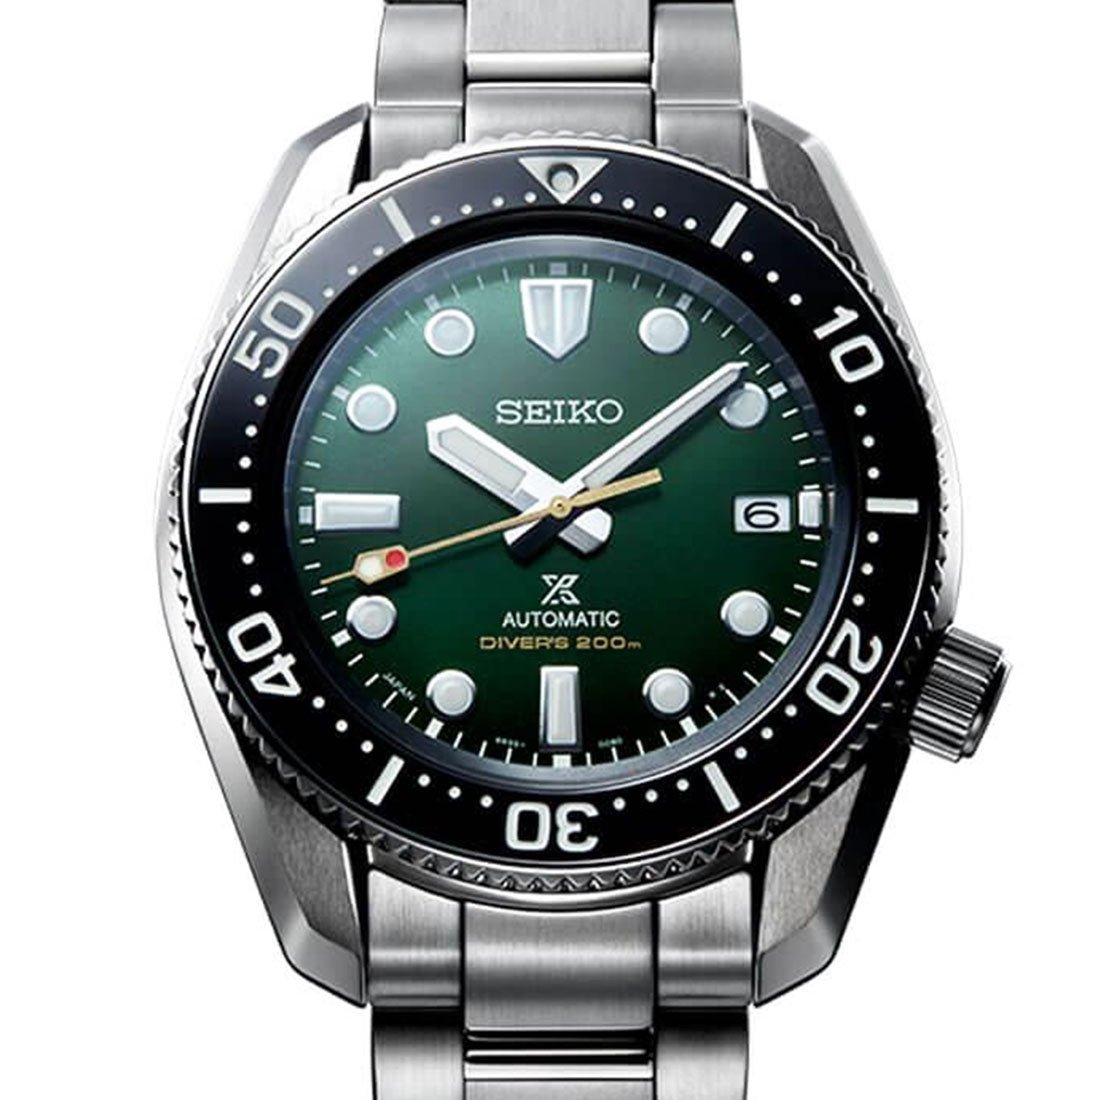 Seiko Prospex Marinemaster JDM Divers Watch SBDC133 -Seiko